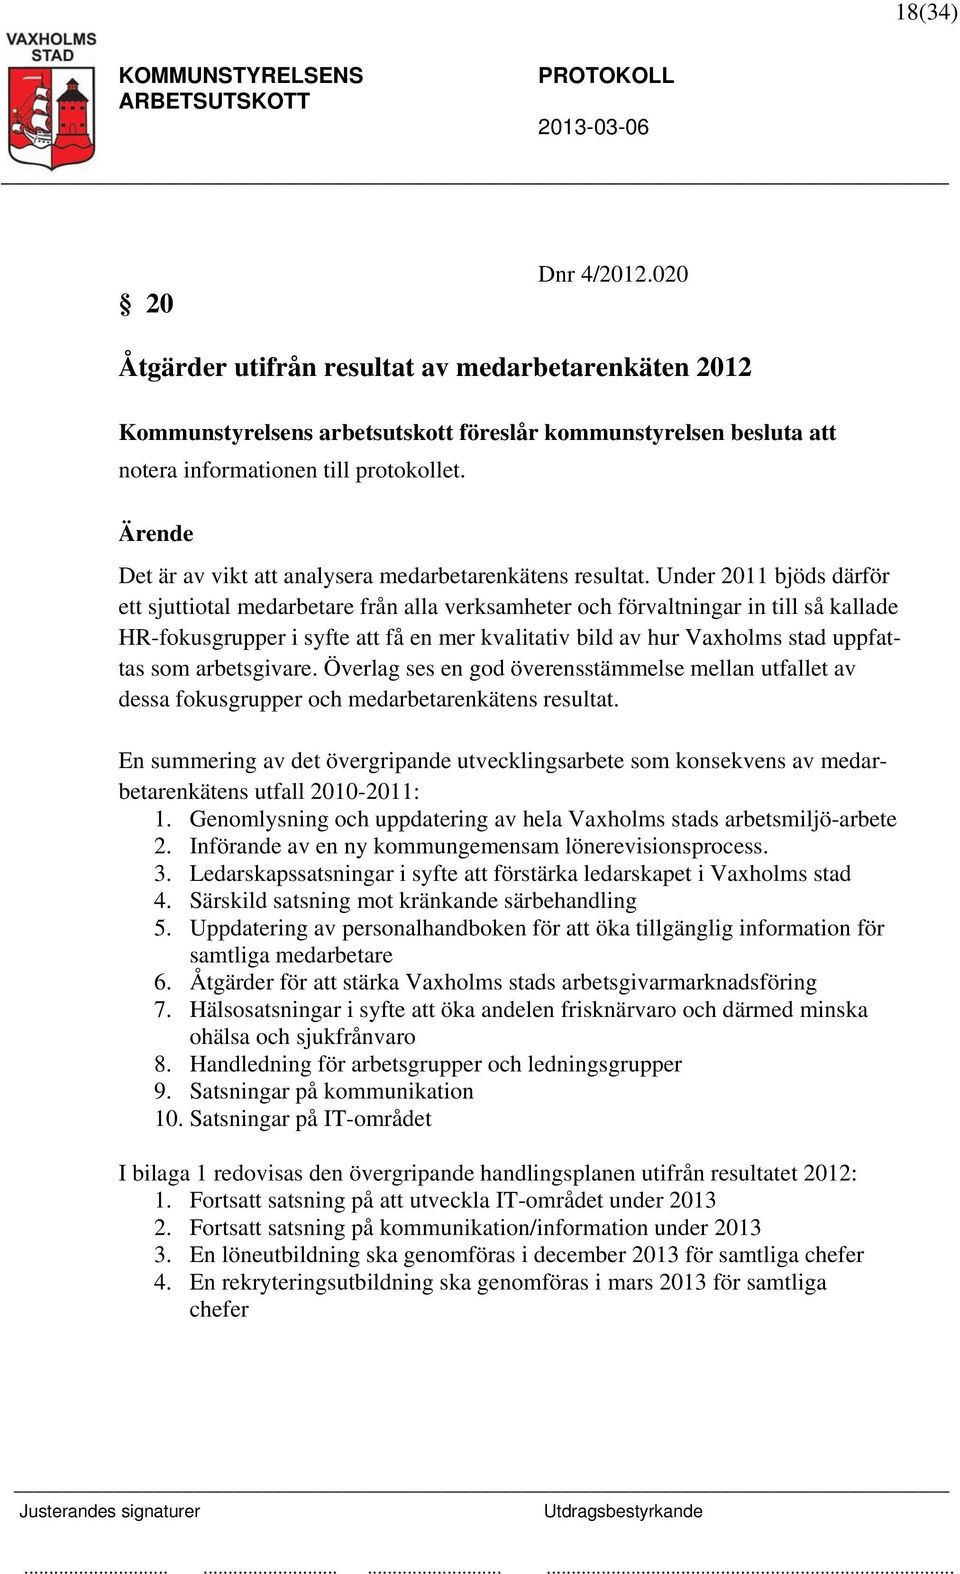 Under 2011 bjöds därför ett sjuttiotal medarbetare från alla verksamheter och förvaltningar in till så kallade HR-fokusgrupper i syfte att få en mer kvalitativ bild av hur Vaxholms stad uppfattas som